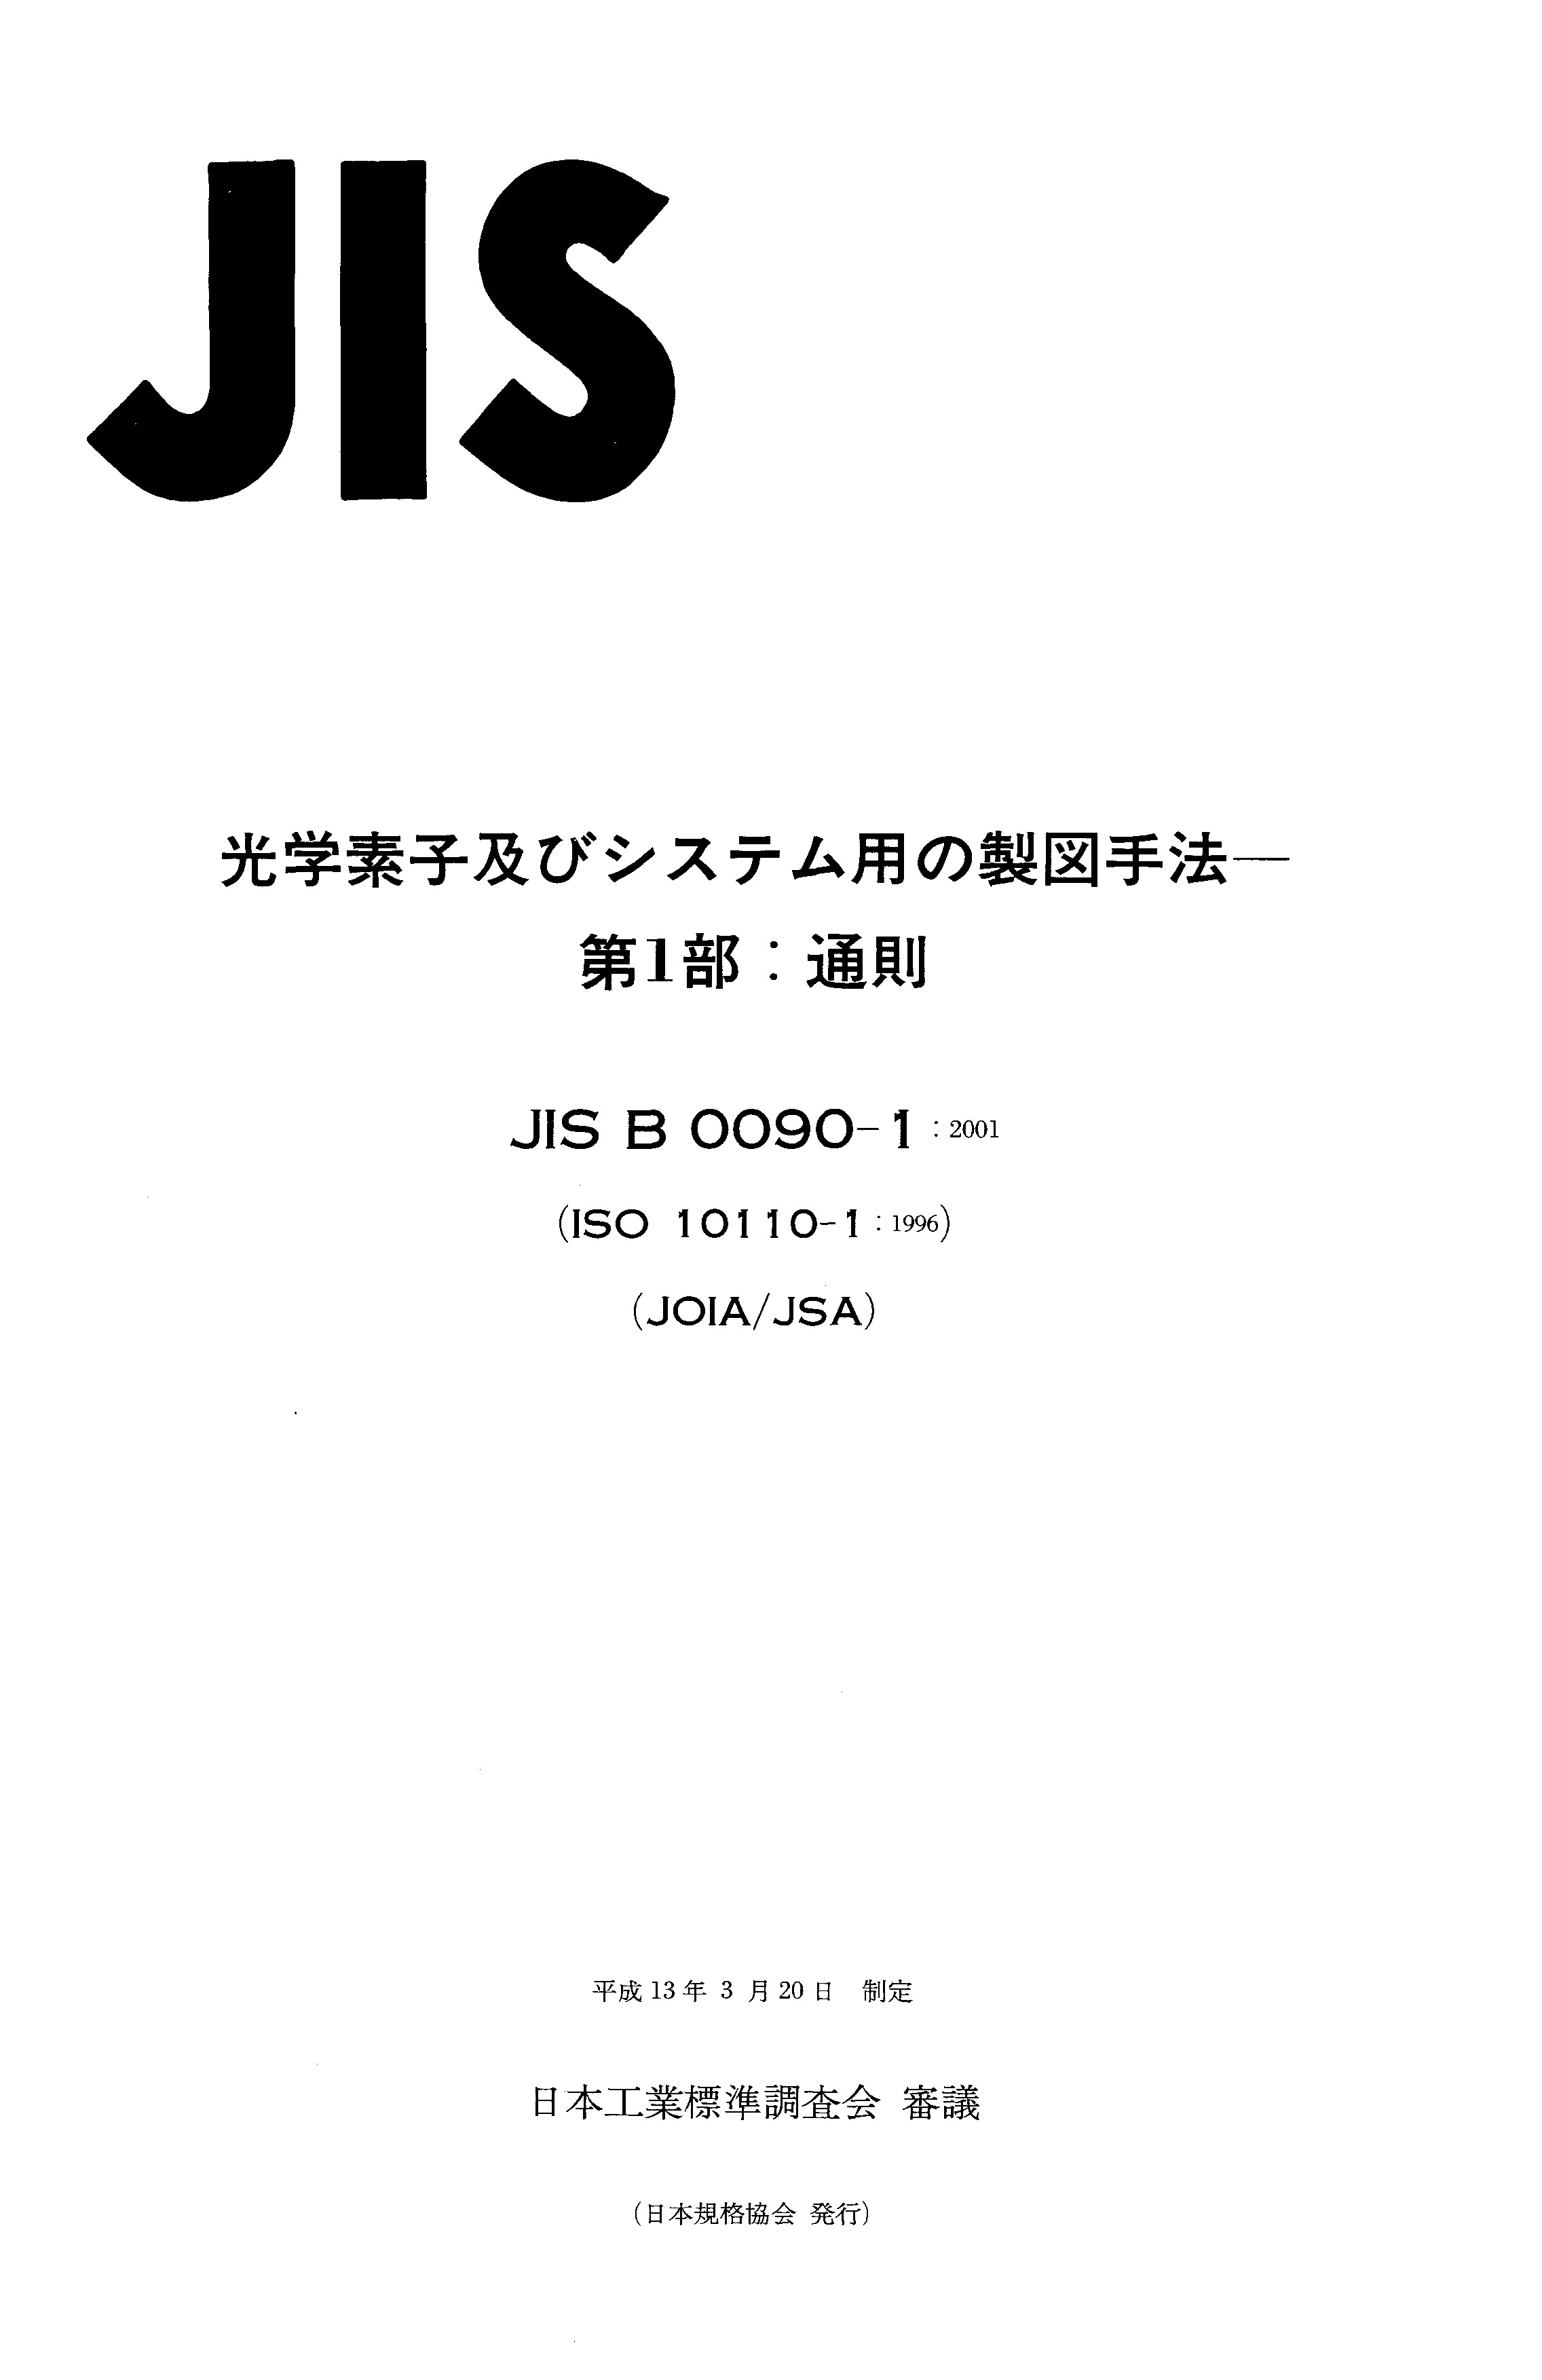 JIS B 0090-1:2001封面图